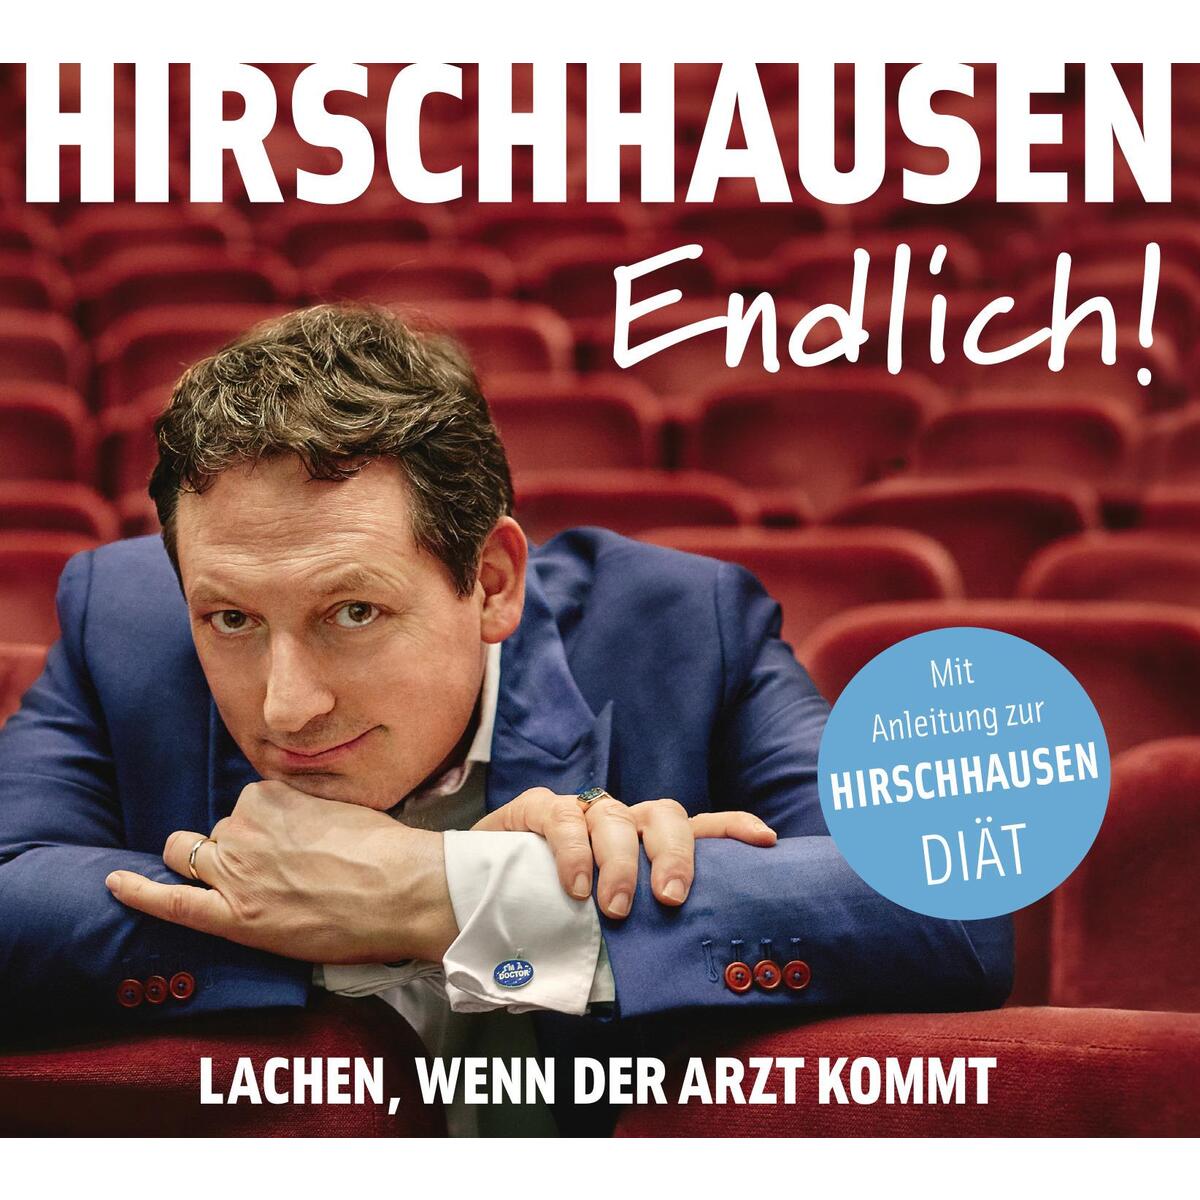 Hirschhausen - Endlich! von der Hörverlag